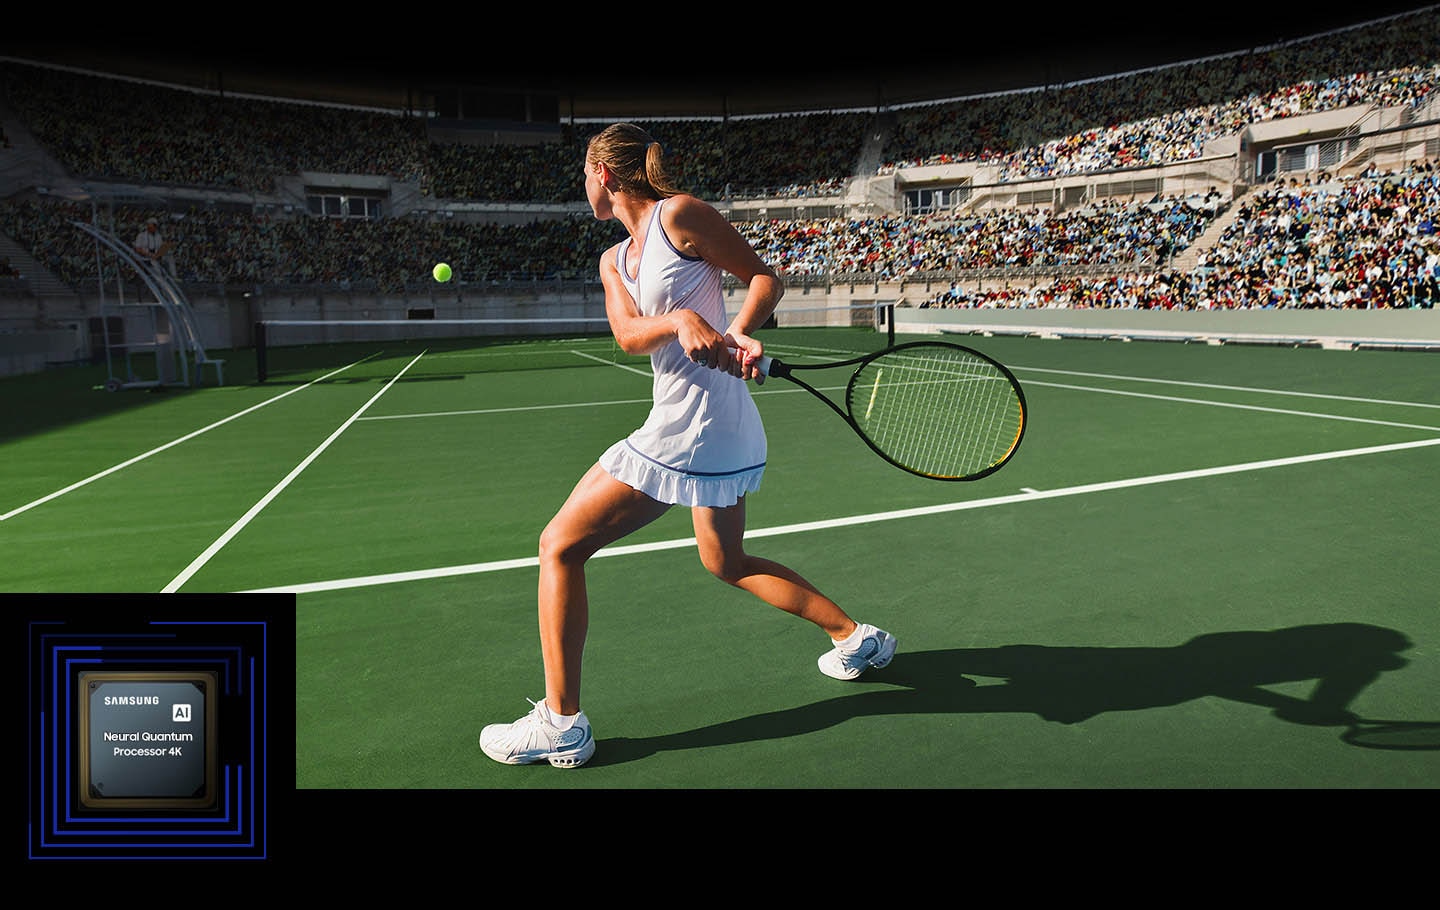  Một người phụ nữ đang chơi tennis trước một đám đông lớn. Bộ xử lý lượng tử thần kinh 4K xử lý nhiều vật thể được hiển thị và nâng cao toàn bộ khung cảnh. Bộ xử lý lượng tử thần kinh 4K được hiển thị ở góc dưới bên trái.